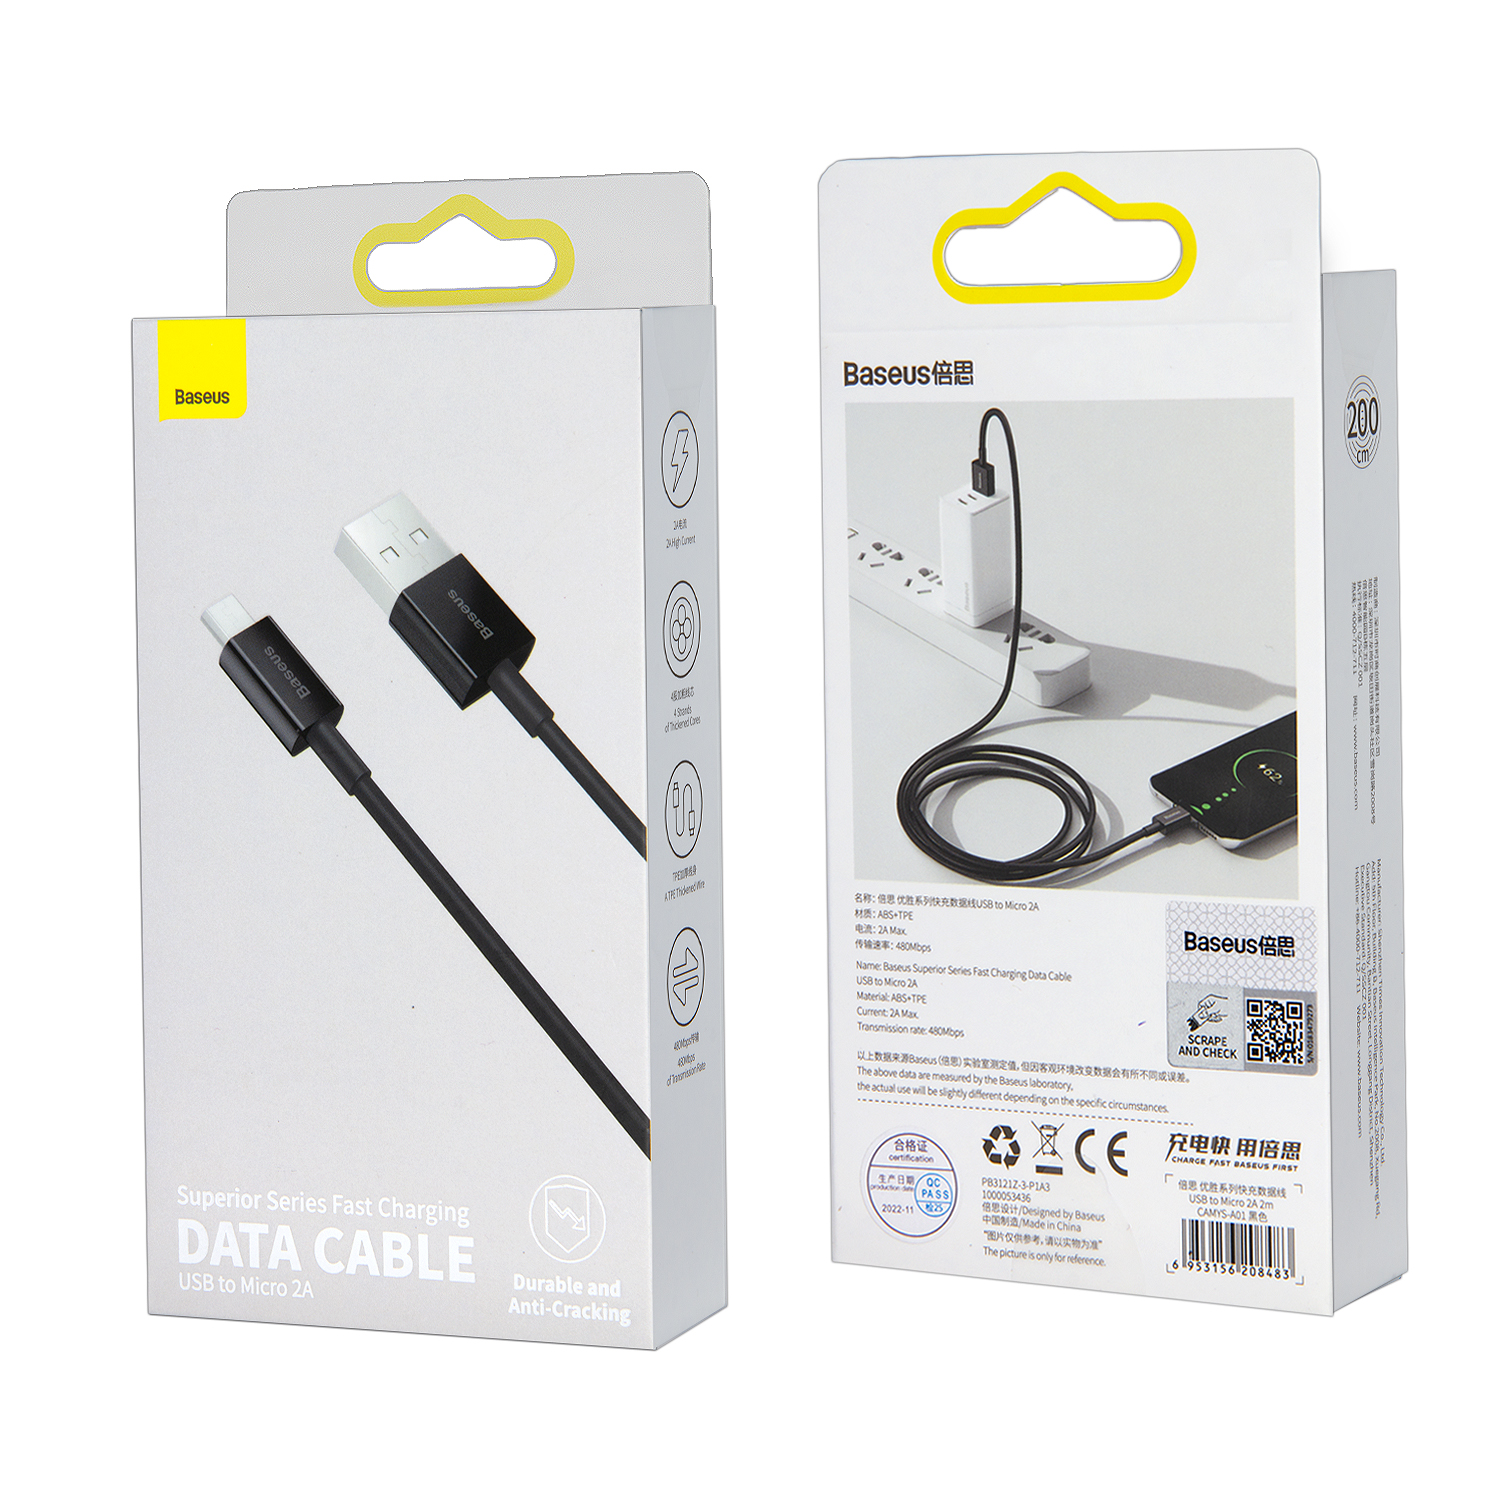 Кабель USB Micro USB 2M 2A  Superior Series Fast Charging Baseus черный CAMYS-A01